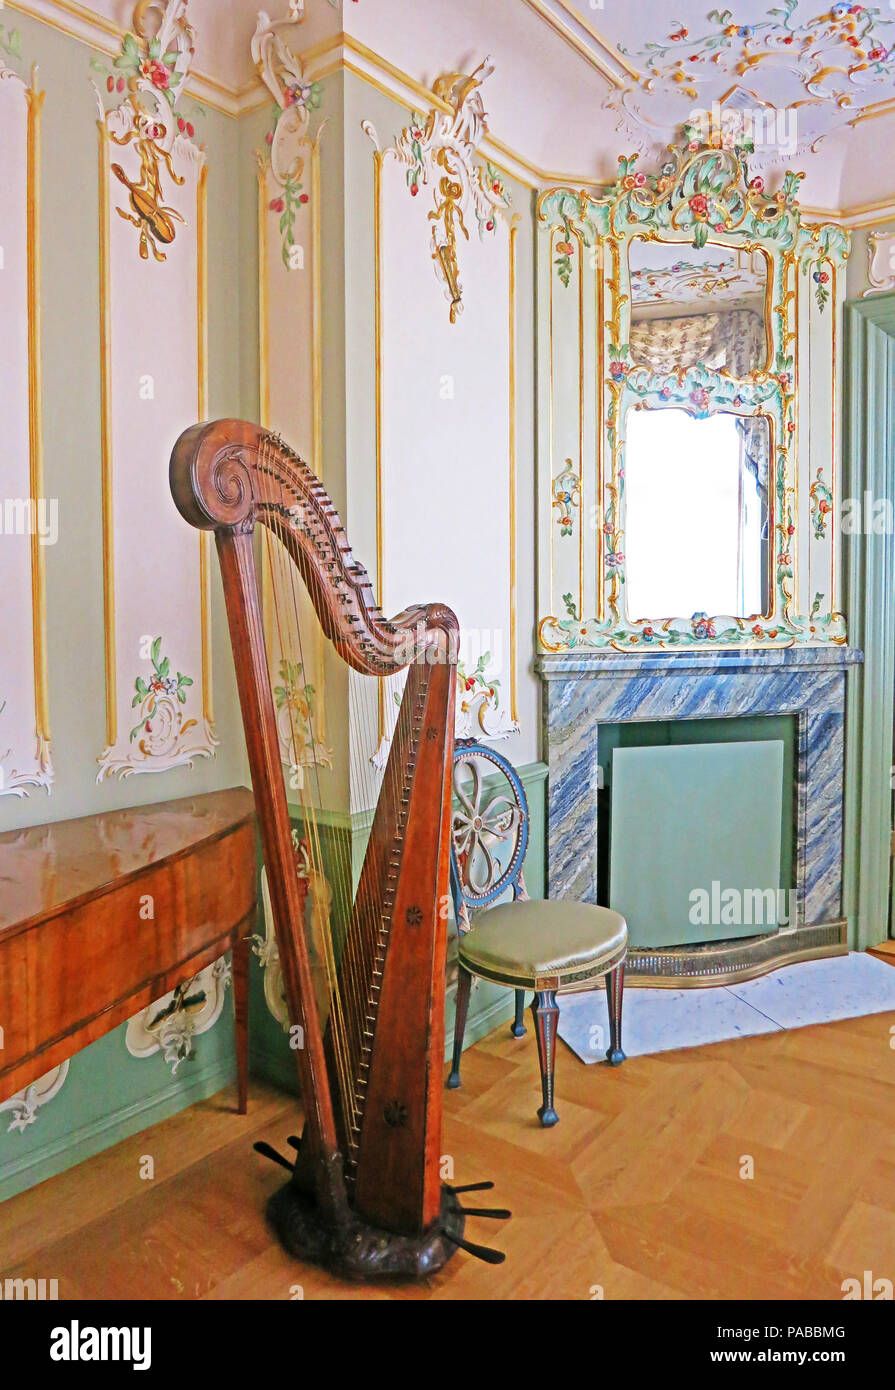 Harpe, Uphagen's House, musée, Długa, Gdańsk, occidentale, Pologne Banque D'Images